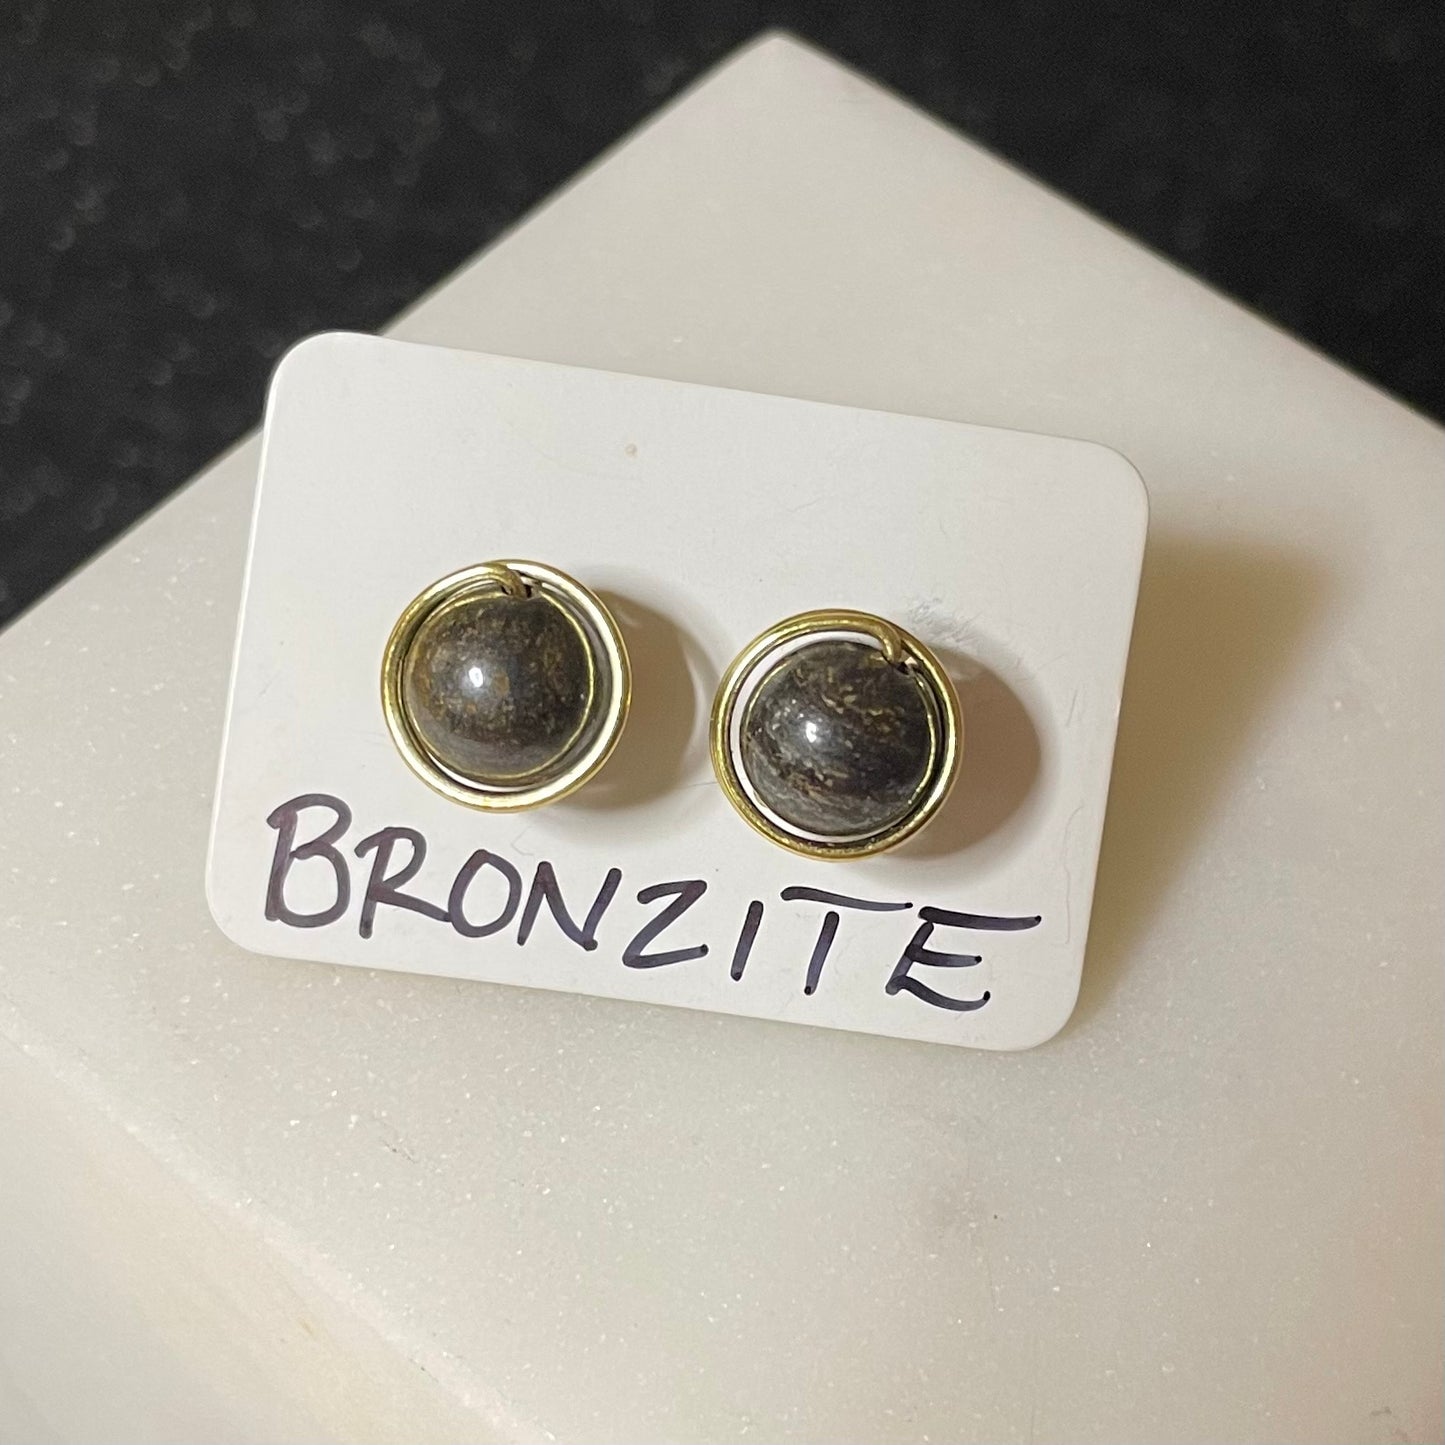 Bronzite 8mm